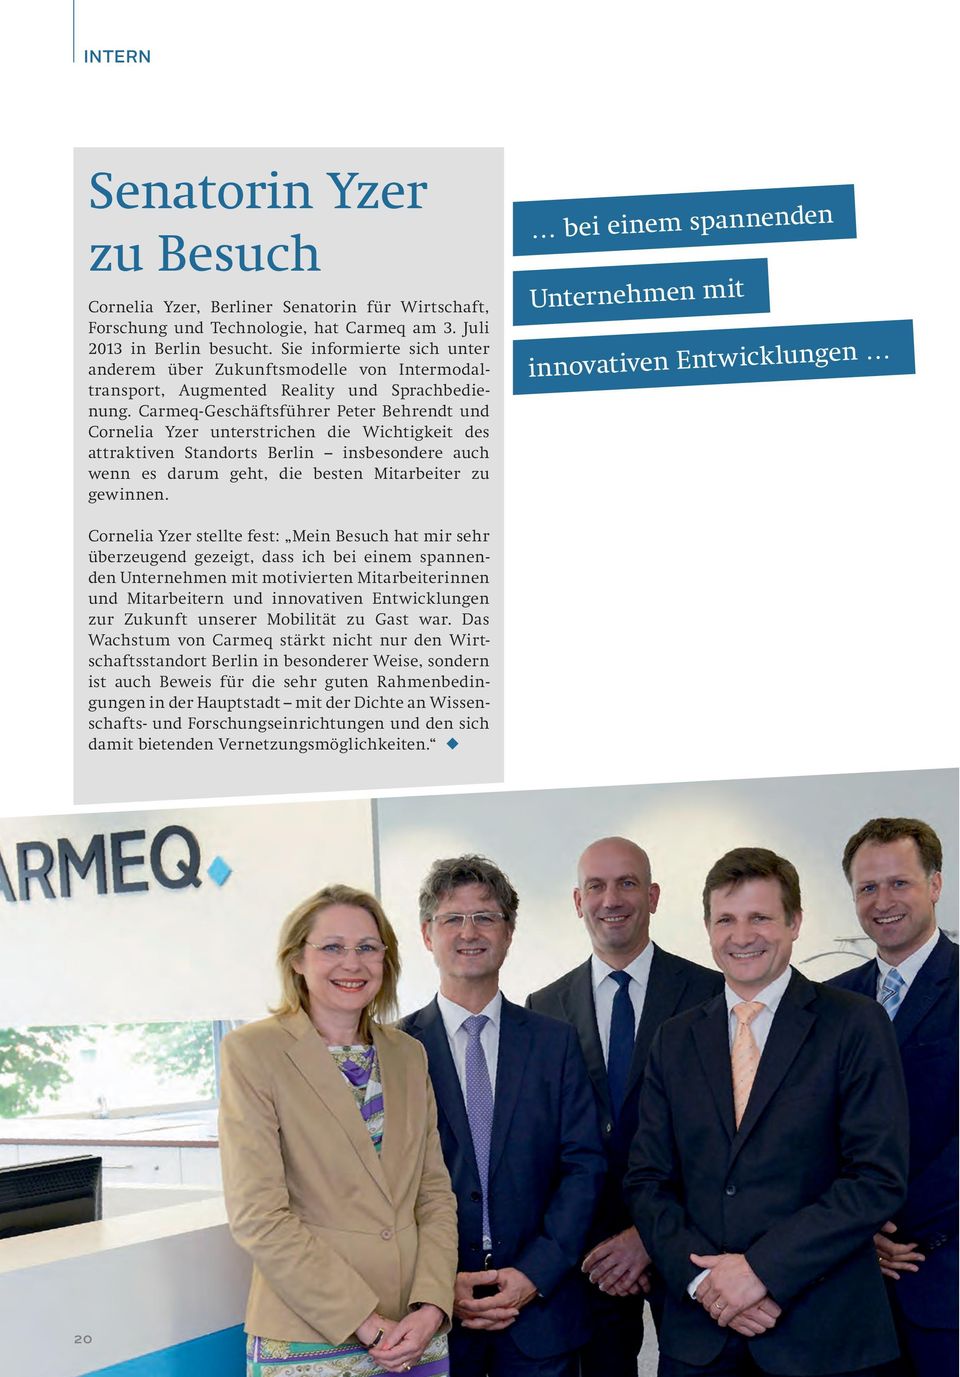 Carmeq-Geschäftsführer Peter Behrendt und Cornelia Yzer unterstrichen die Wichtigkeit des attraktiven Standorts Berlin insbesondere auch wenn es darum geht, die besten Mitarbeiter zu gewinnen.